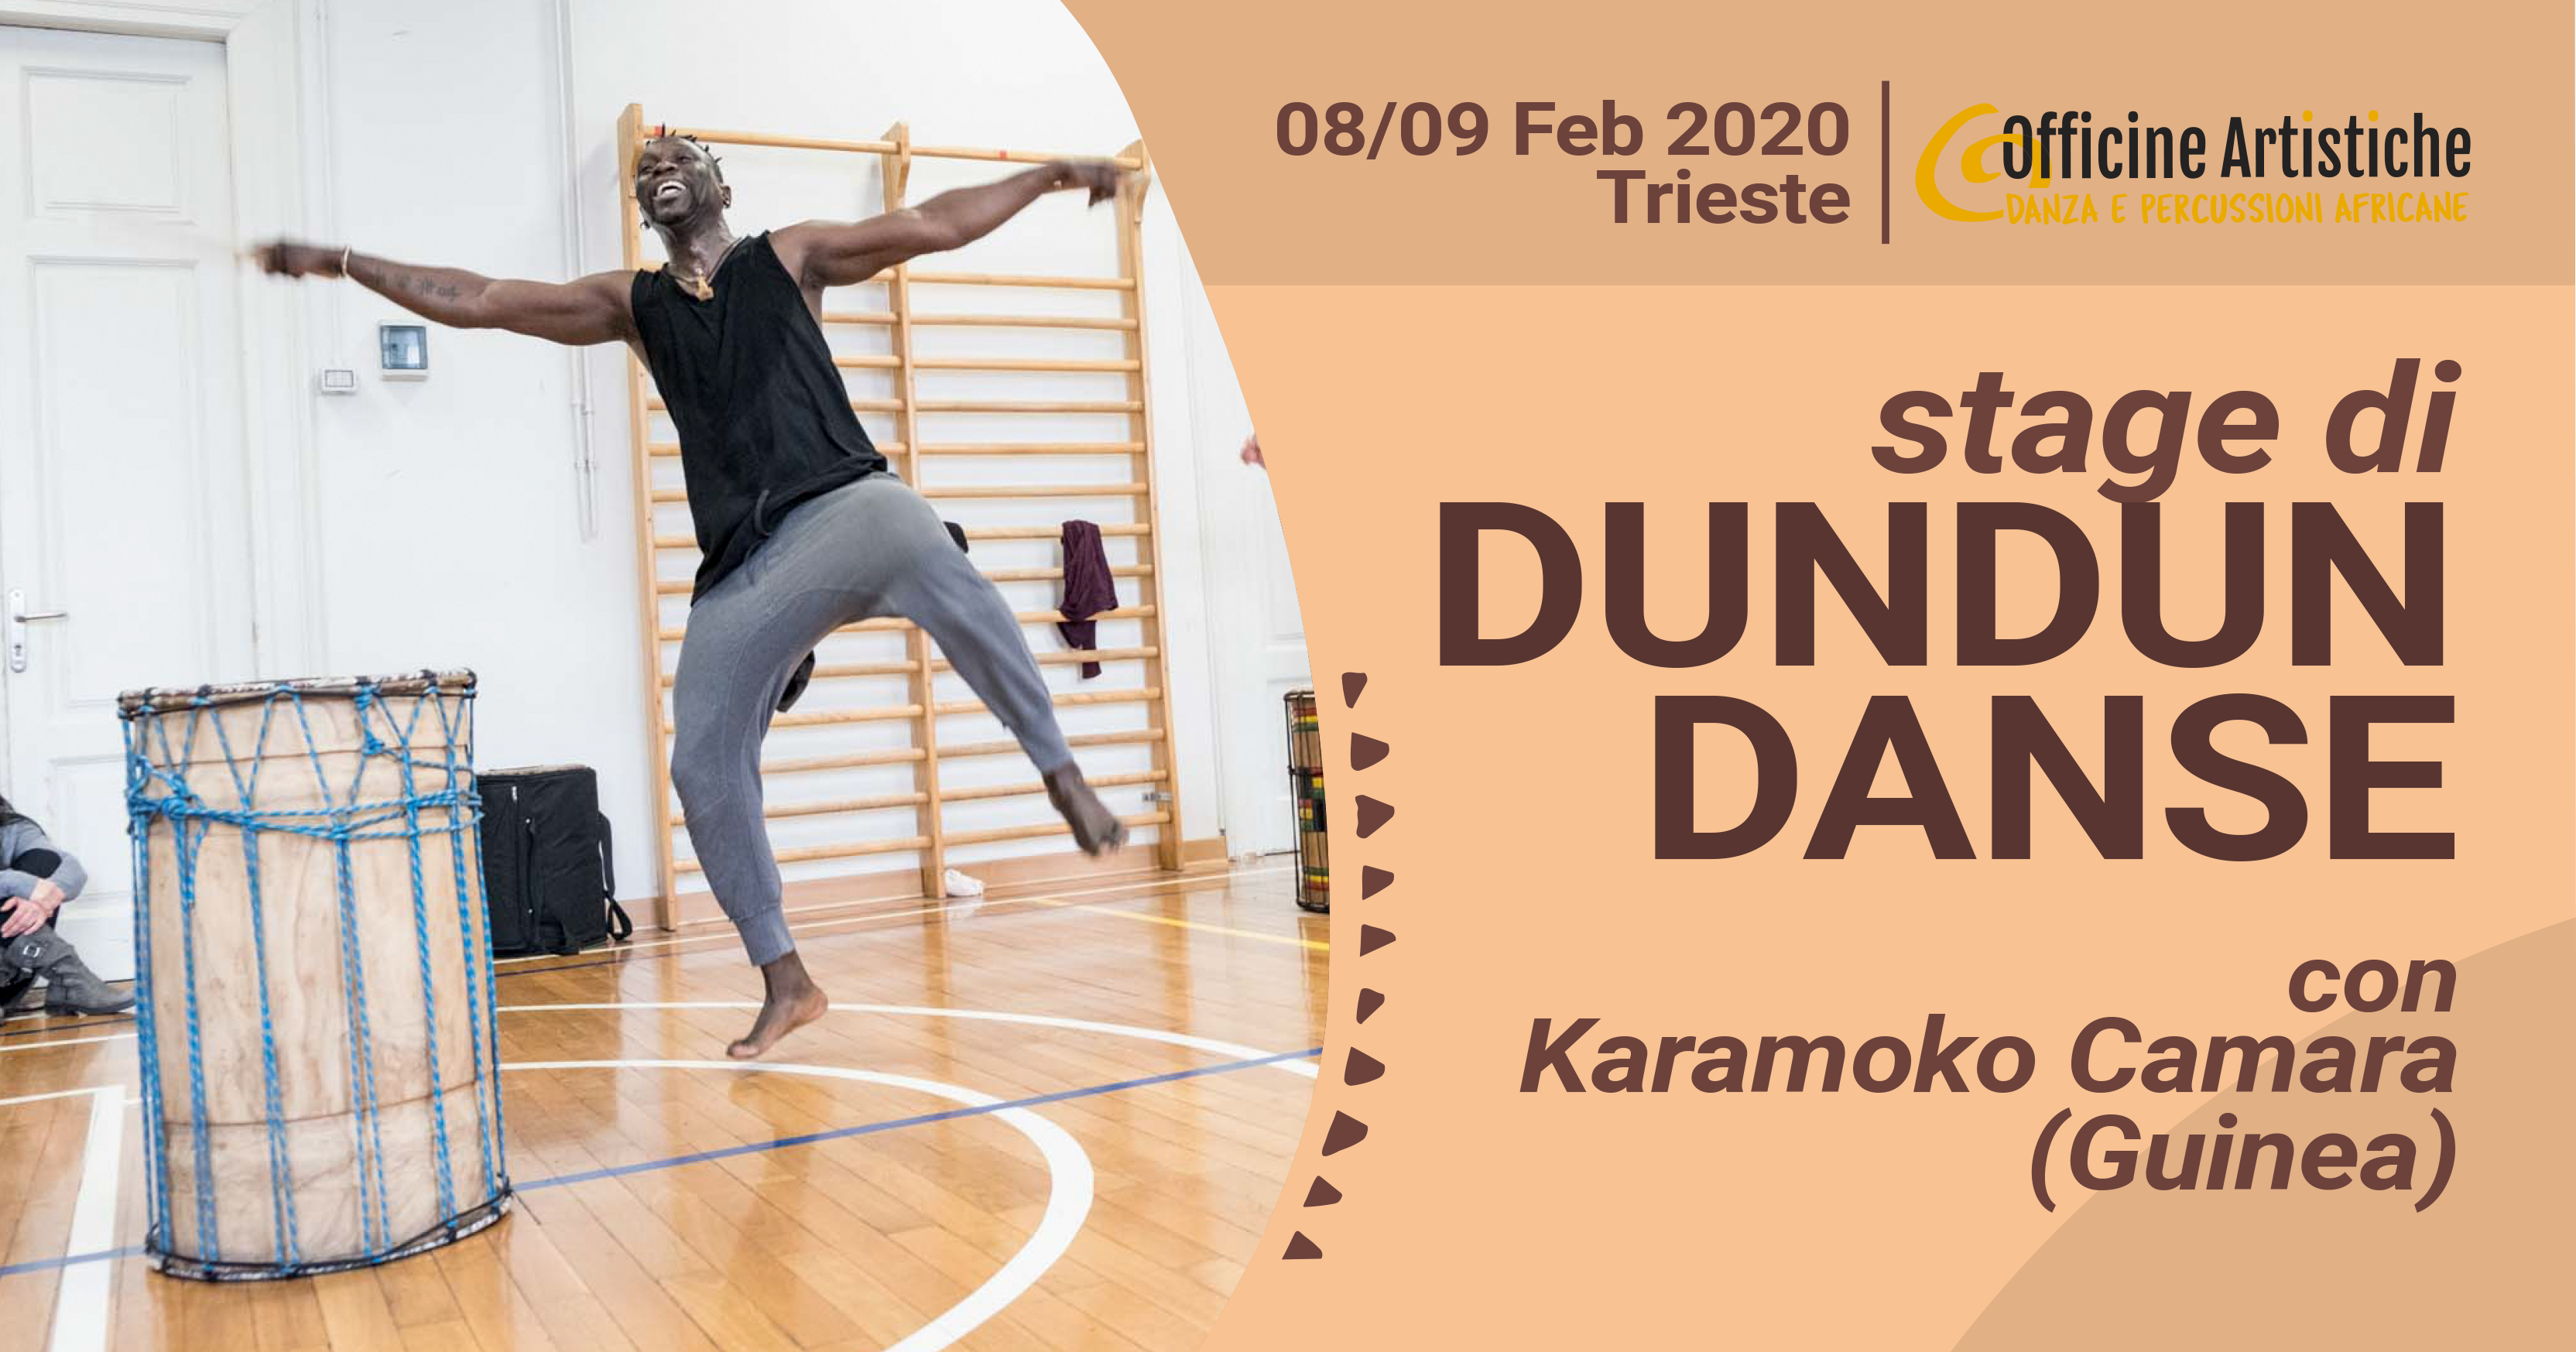 Dundun Danse con Karamoko Camara 2020